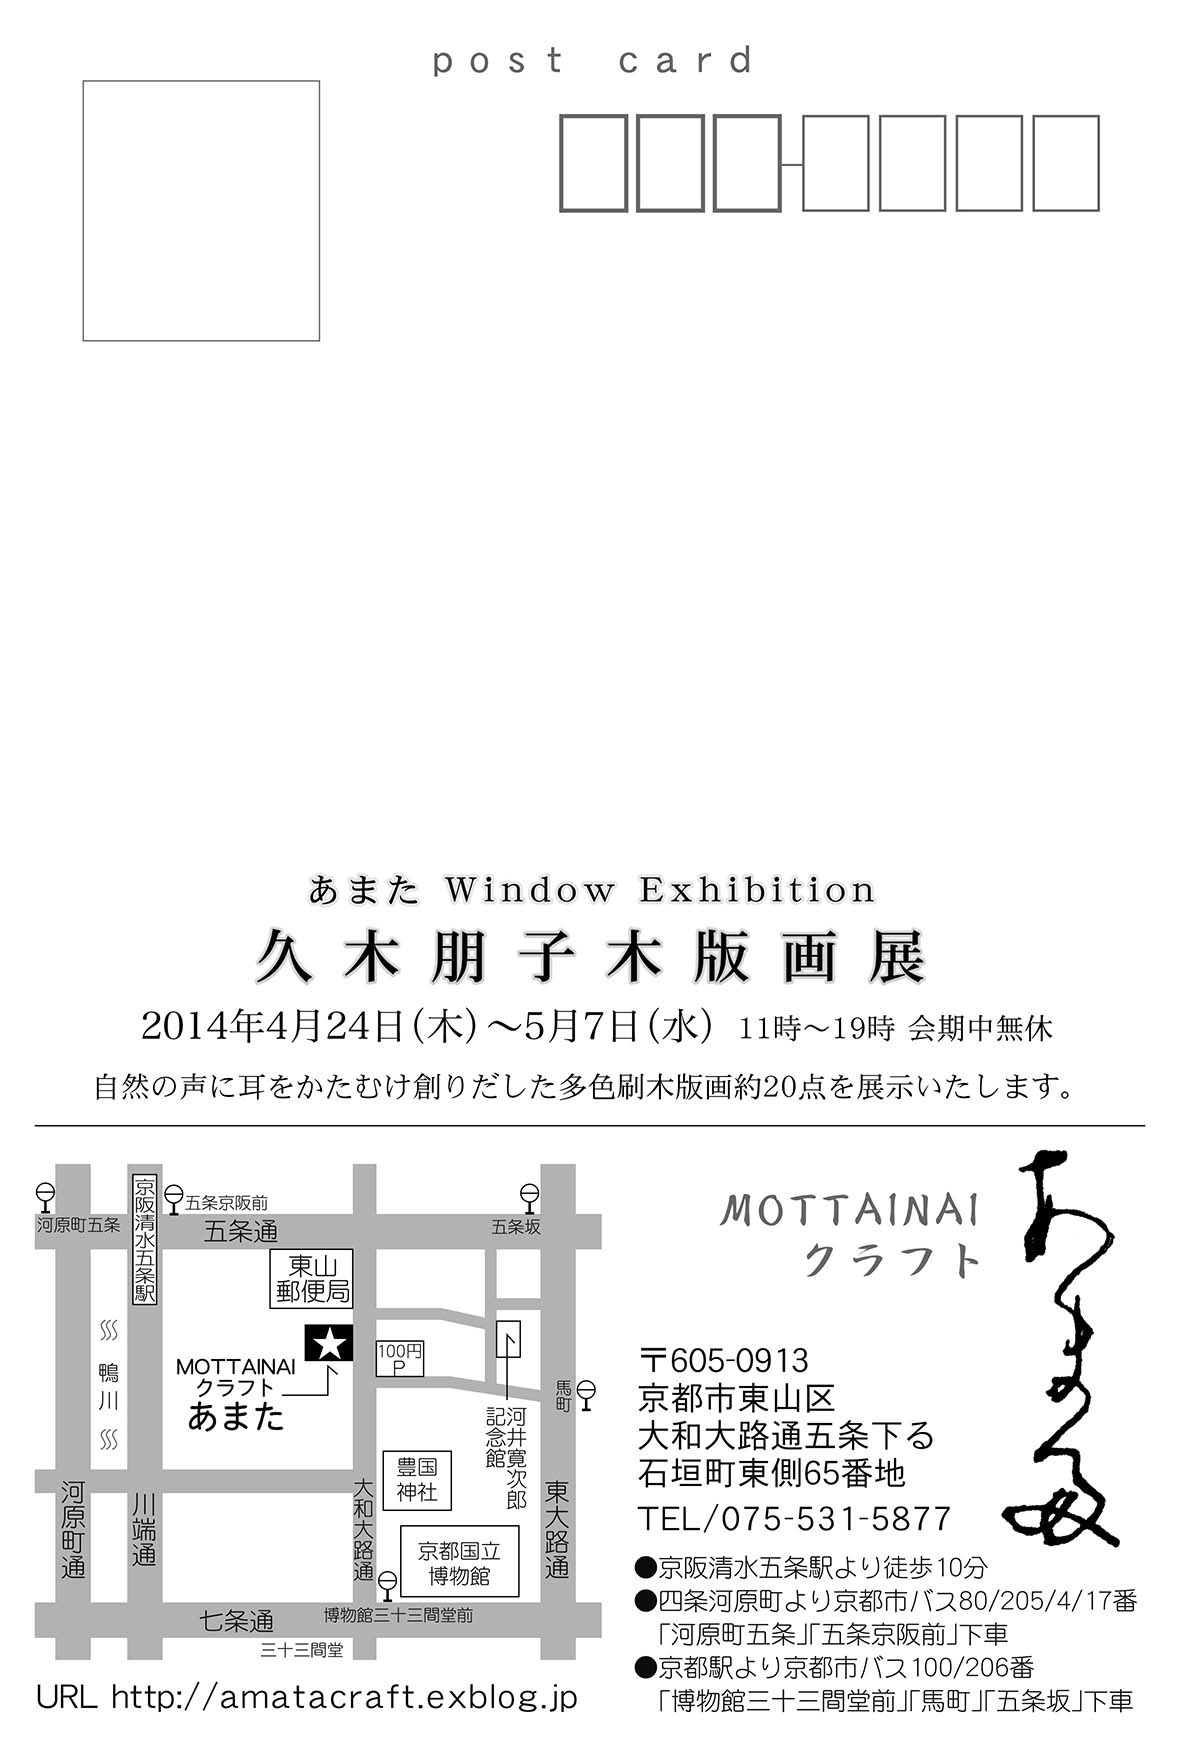 『久木朋子 木版画展2014 』お知らせ_b0153663_18130744.jpg